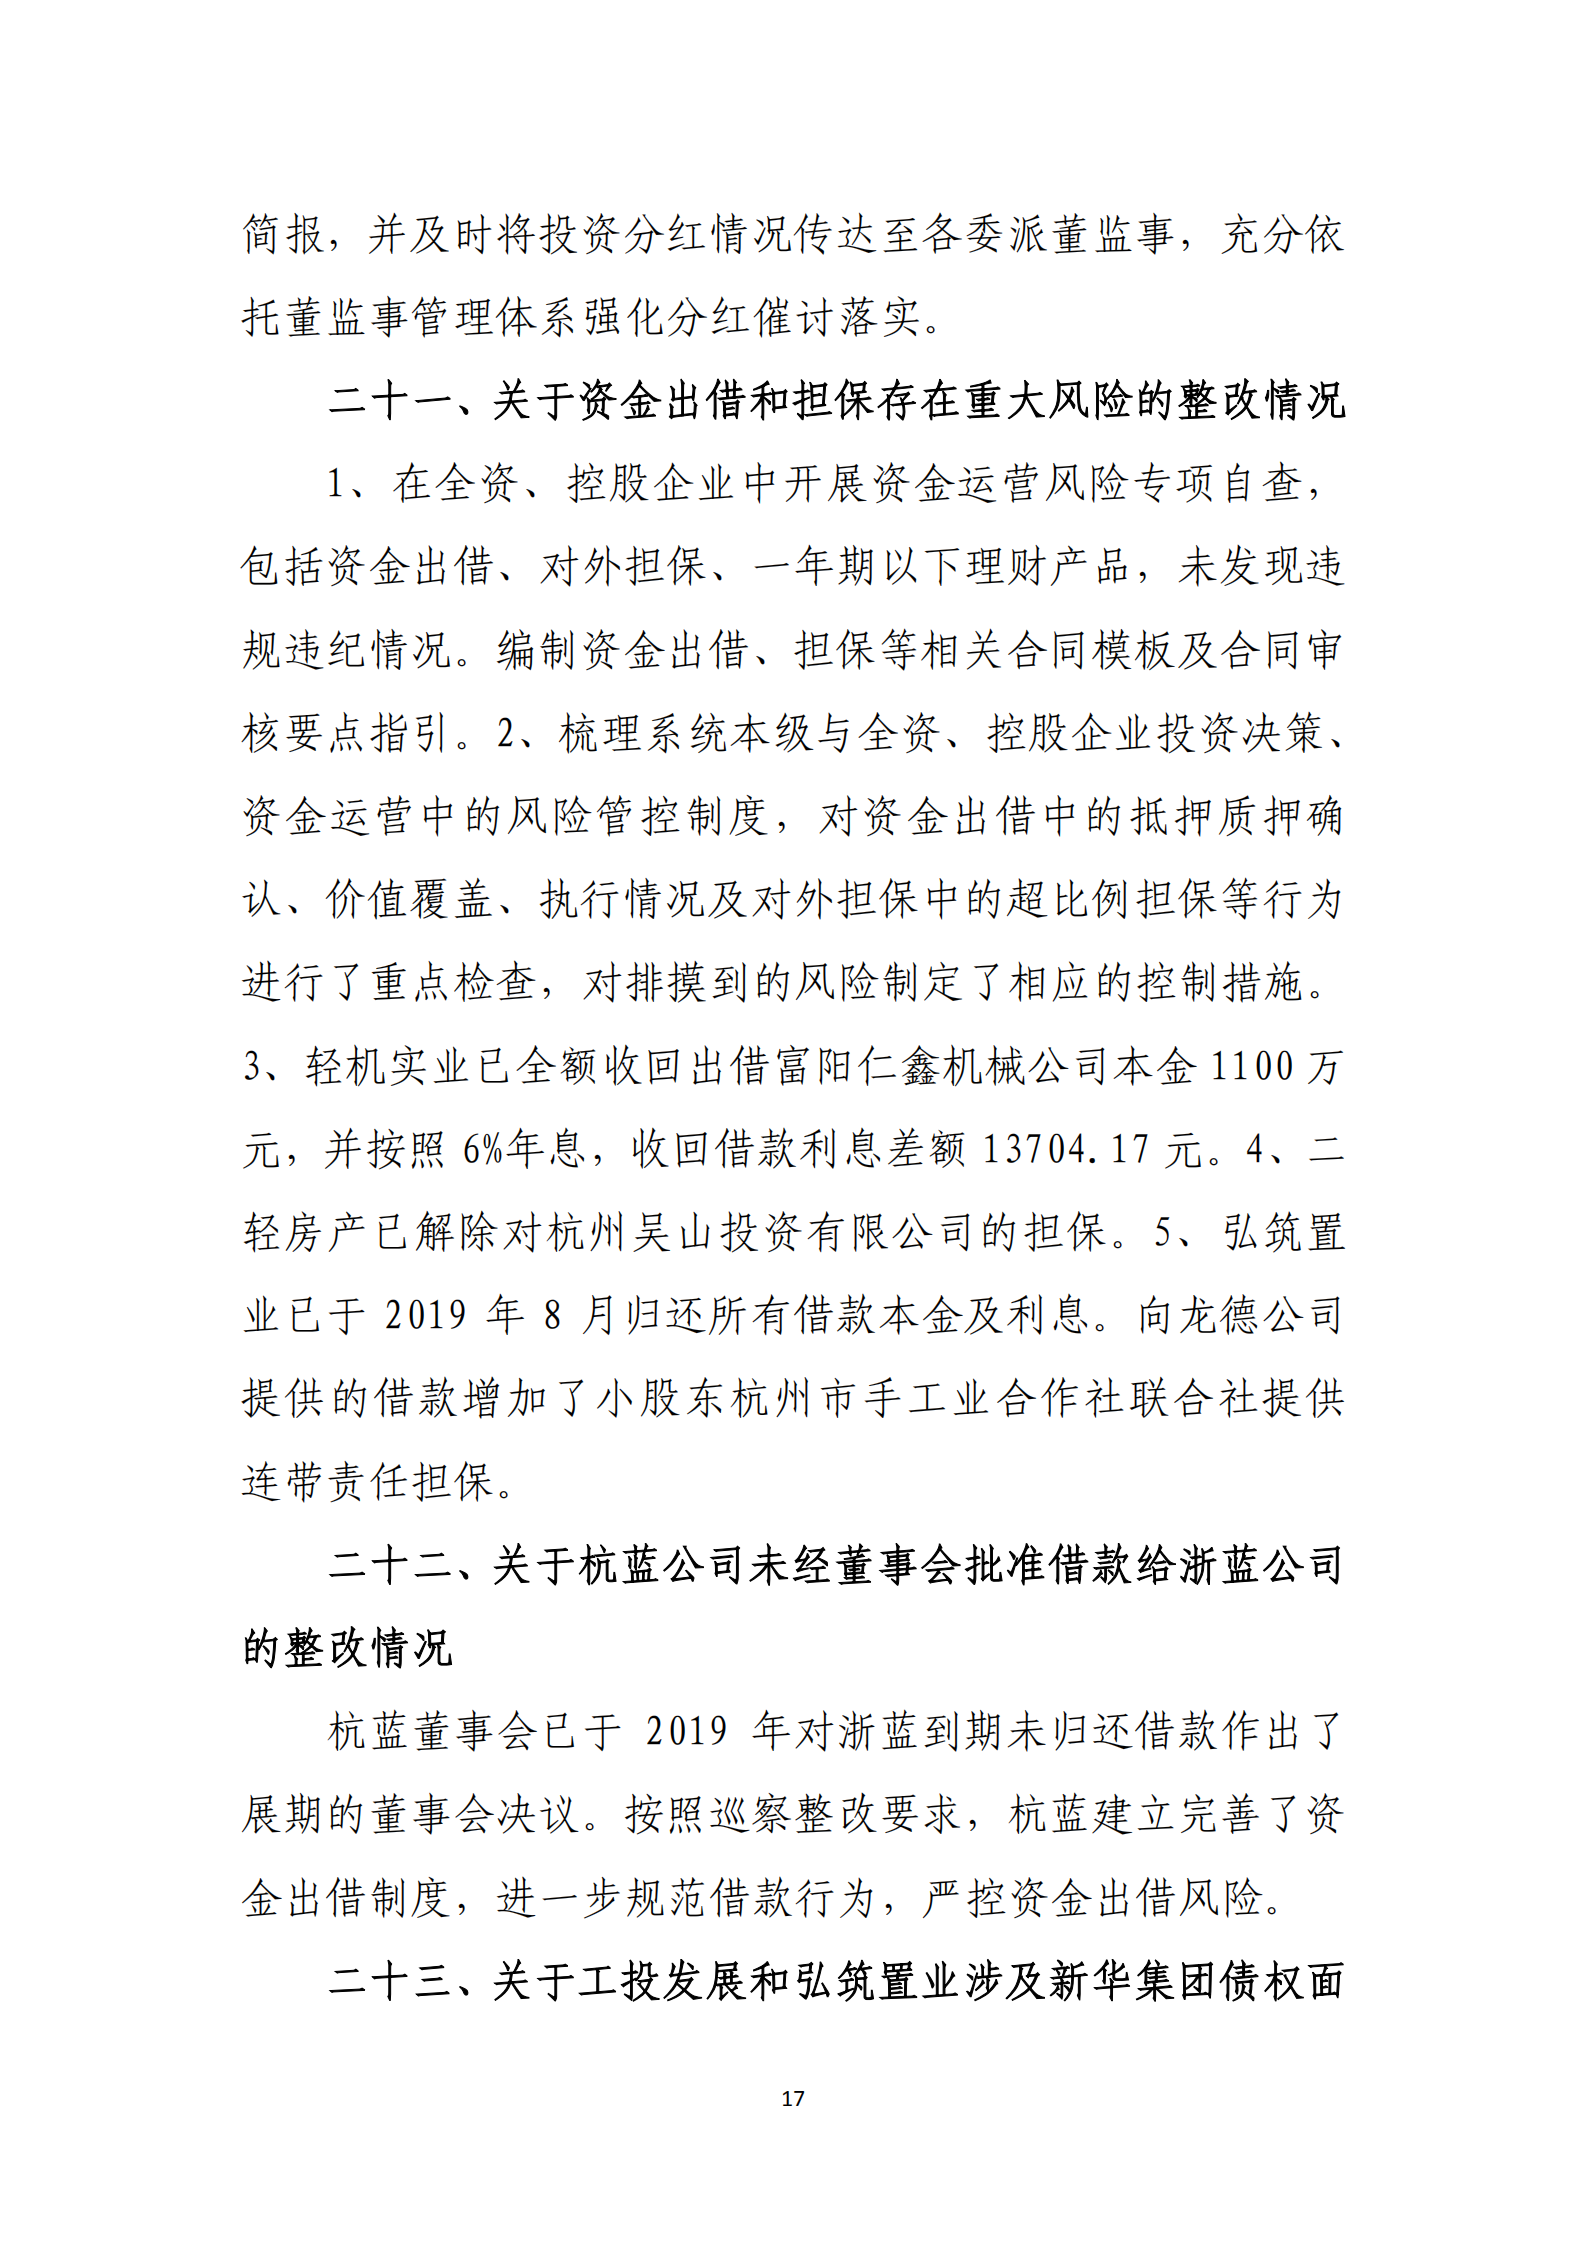 大阳城集团娱乐游戏党委关于巡察整改情况的通报_16.png